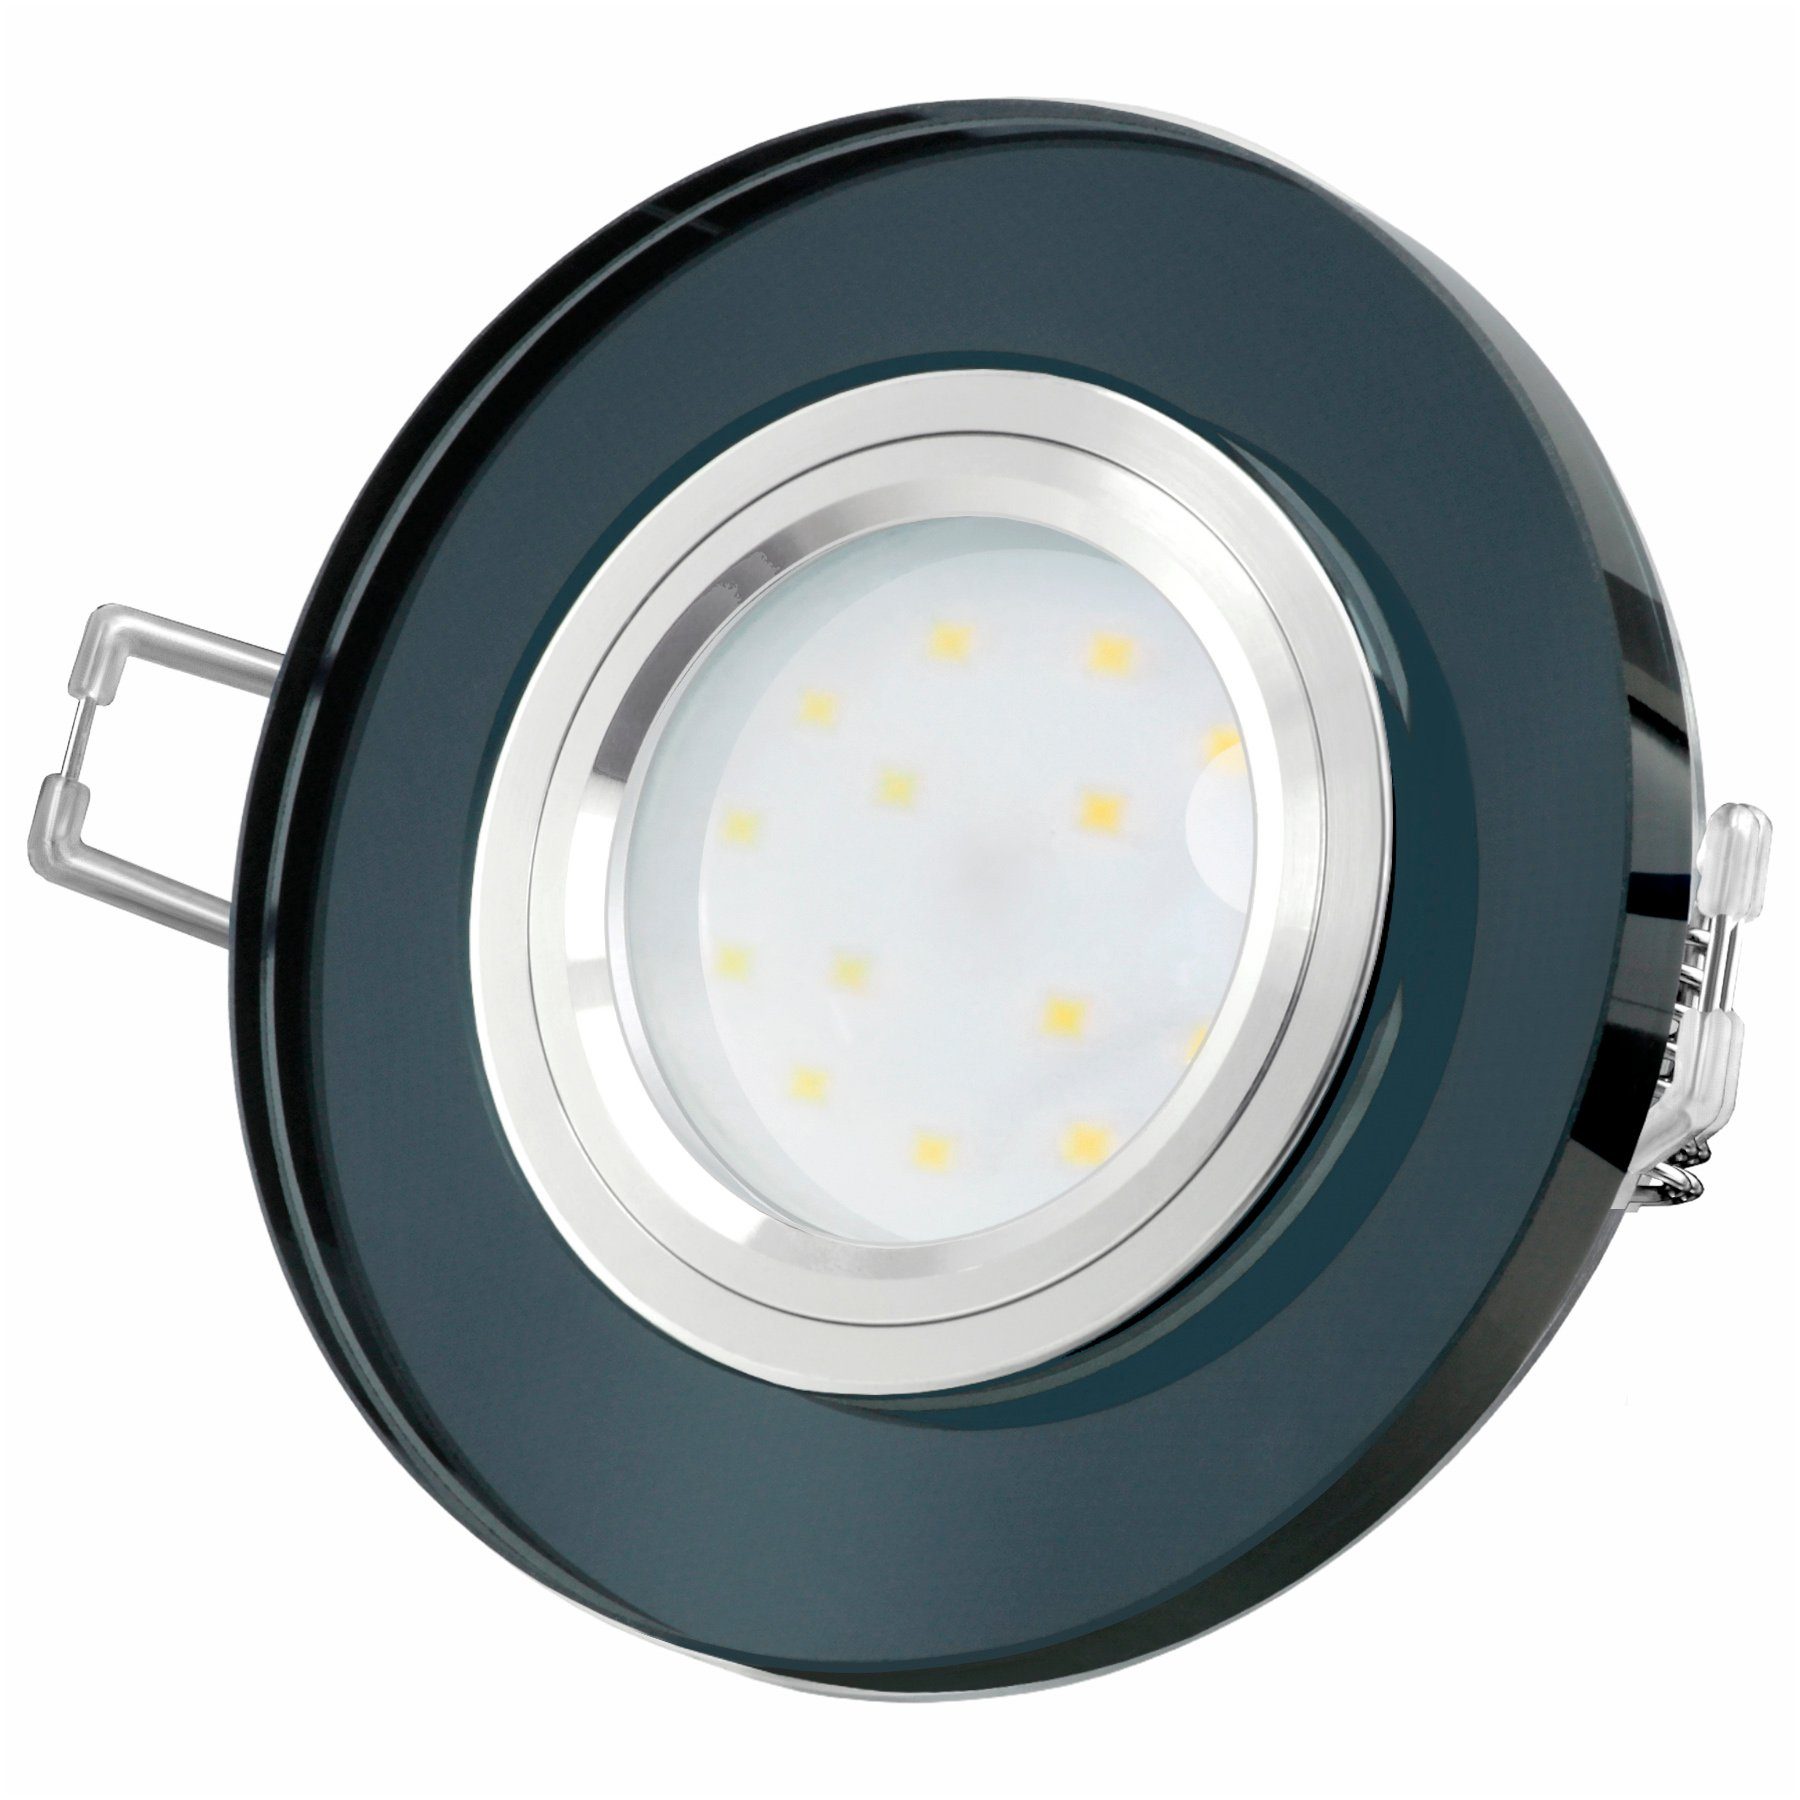 SSC-LUXon LED Einbaustrahler Glas spiegelnd, LED, rund, fourSTEP schwarz Neutralweiß LED-Einbaustrahler flach